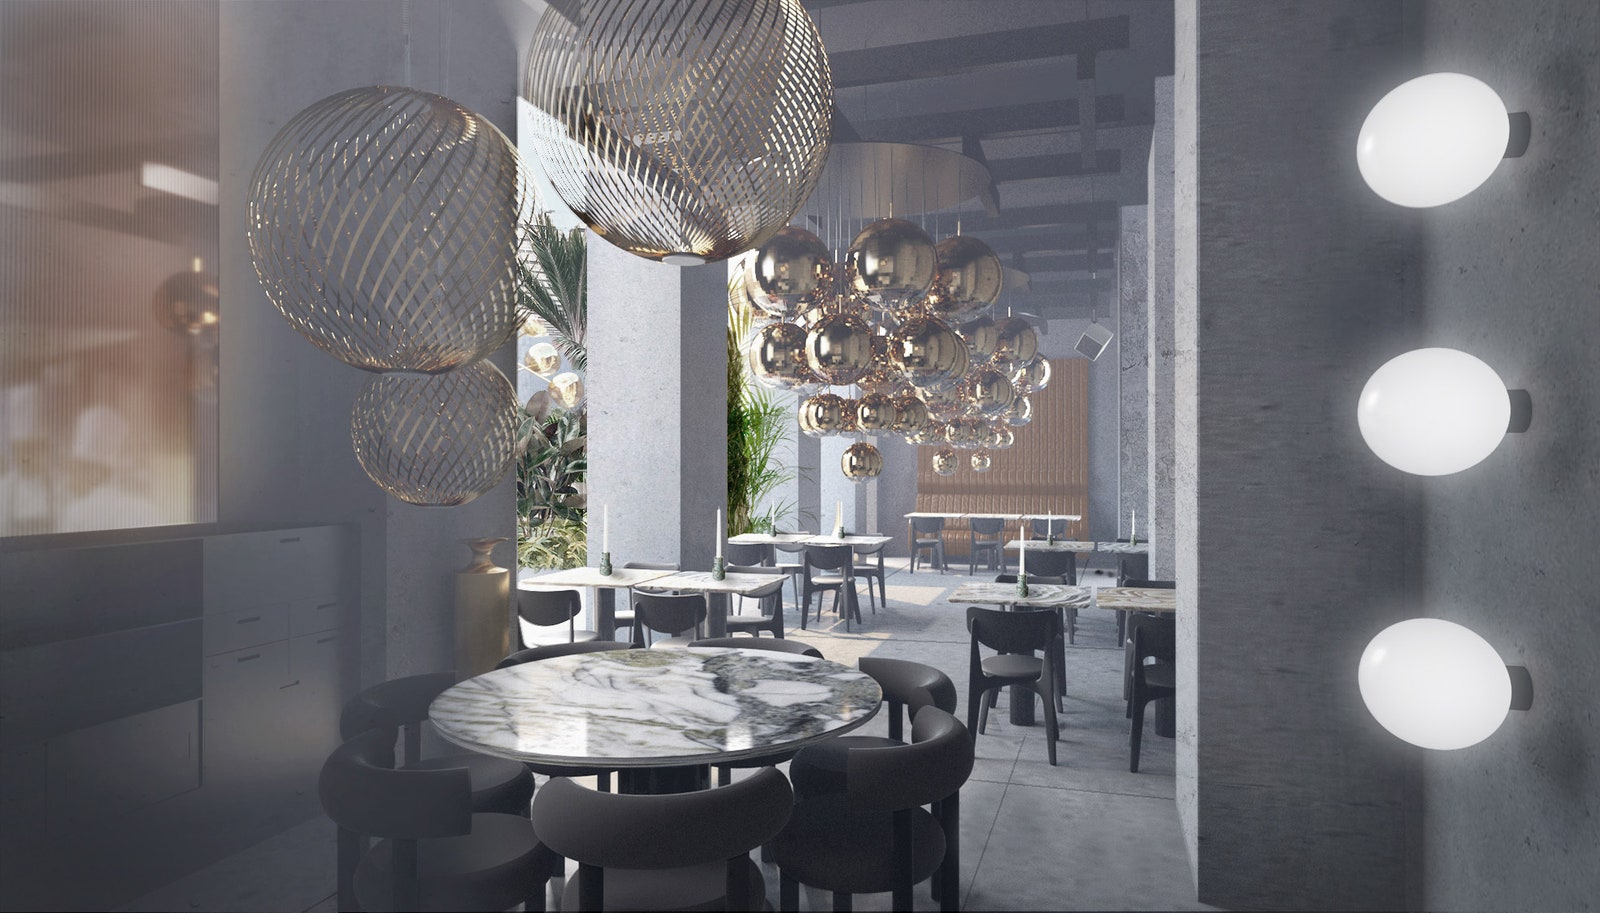 Дизайнпроект ресторана The Manzoni от Тома Диксона к Миланской неделе дизайна